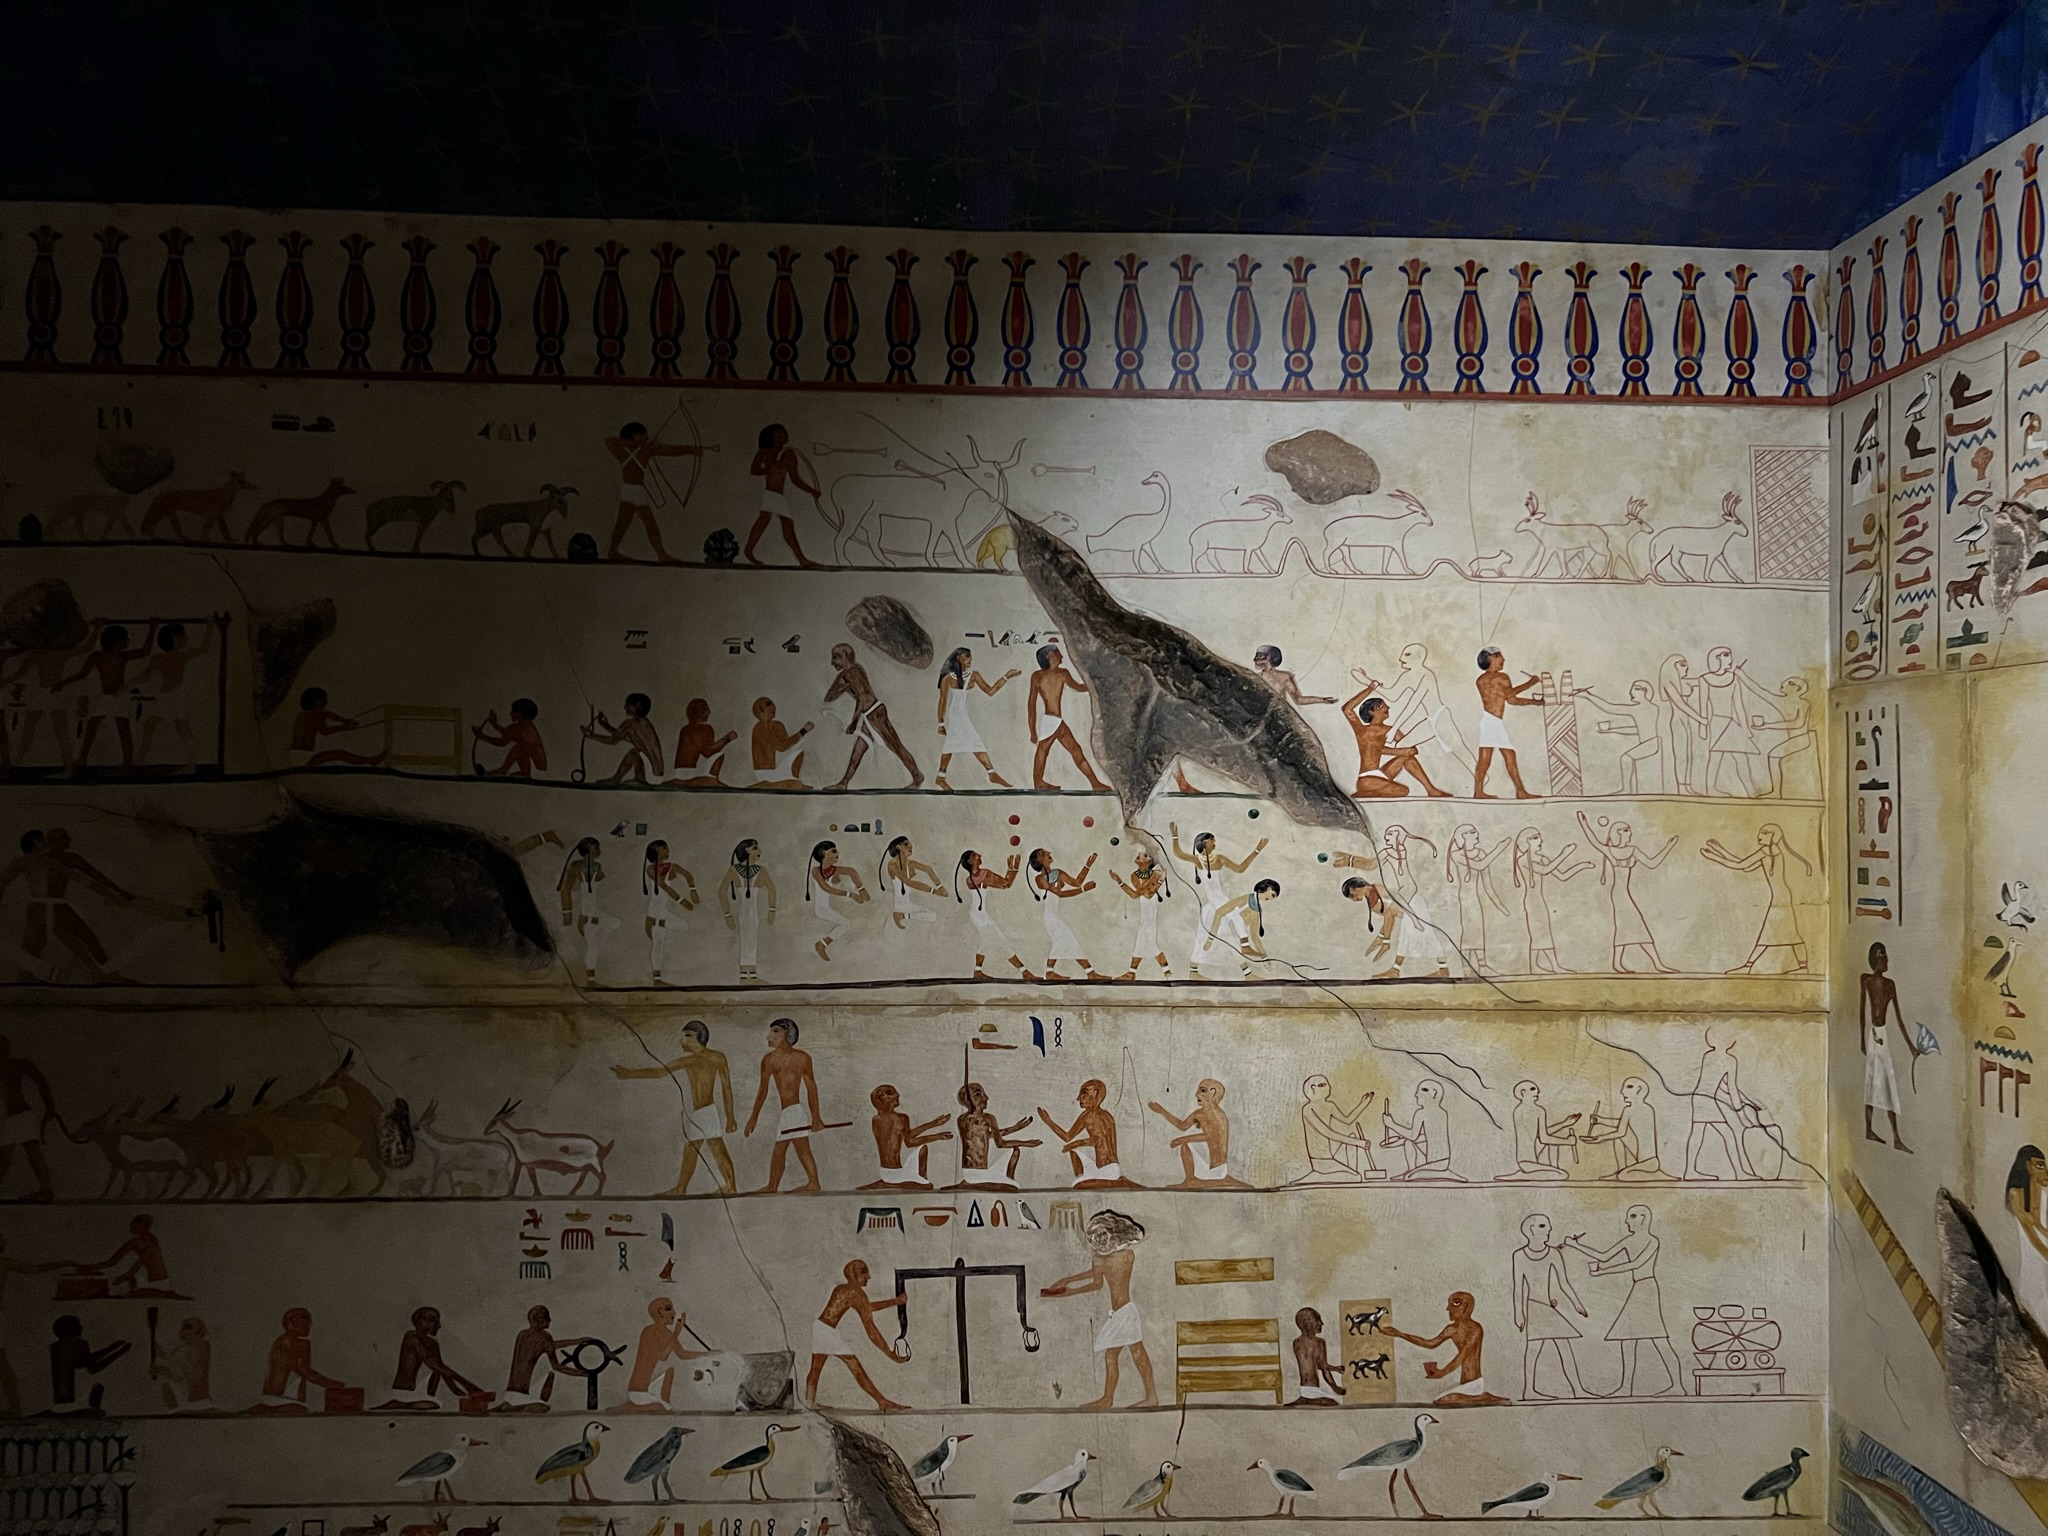 这些不同职业的人和牲畜都是墓穴主人的财产和手下，埃及人相信只要把他们画到墙壁上，墓穴主人在死后的世界也能拥有这些